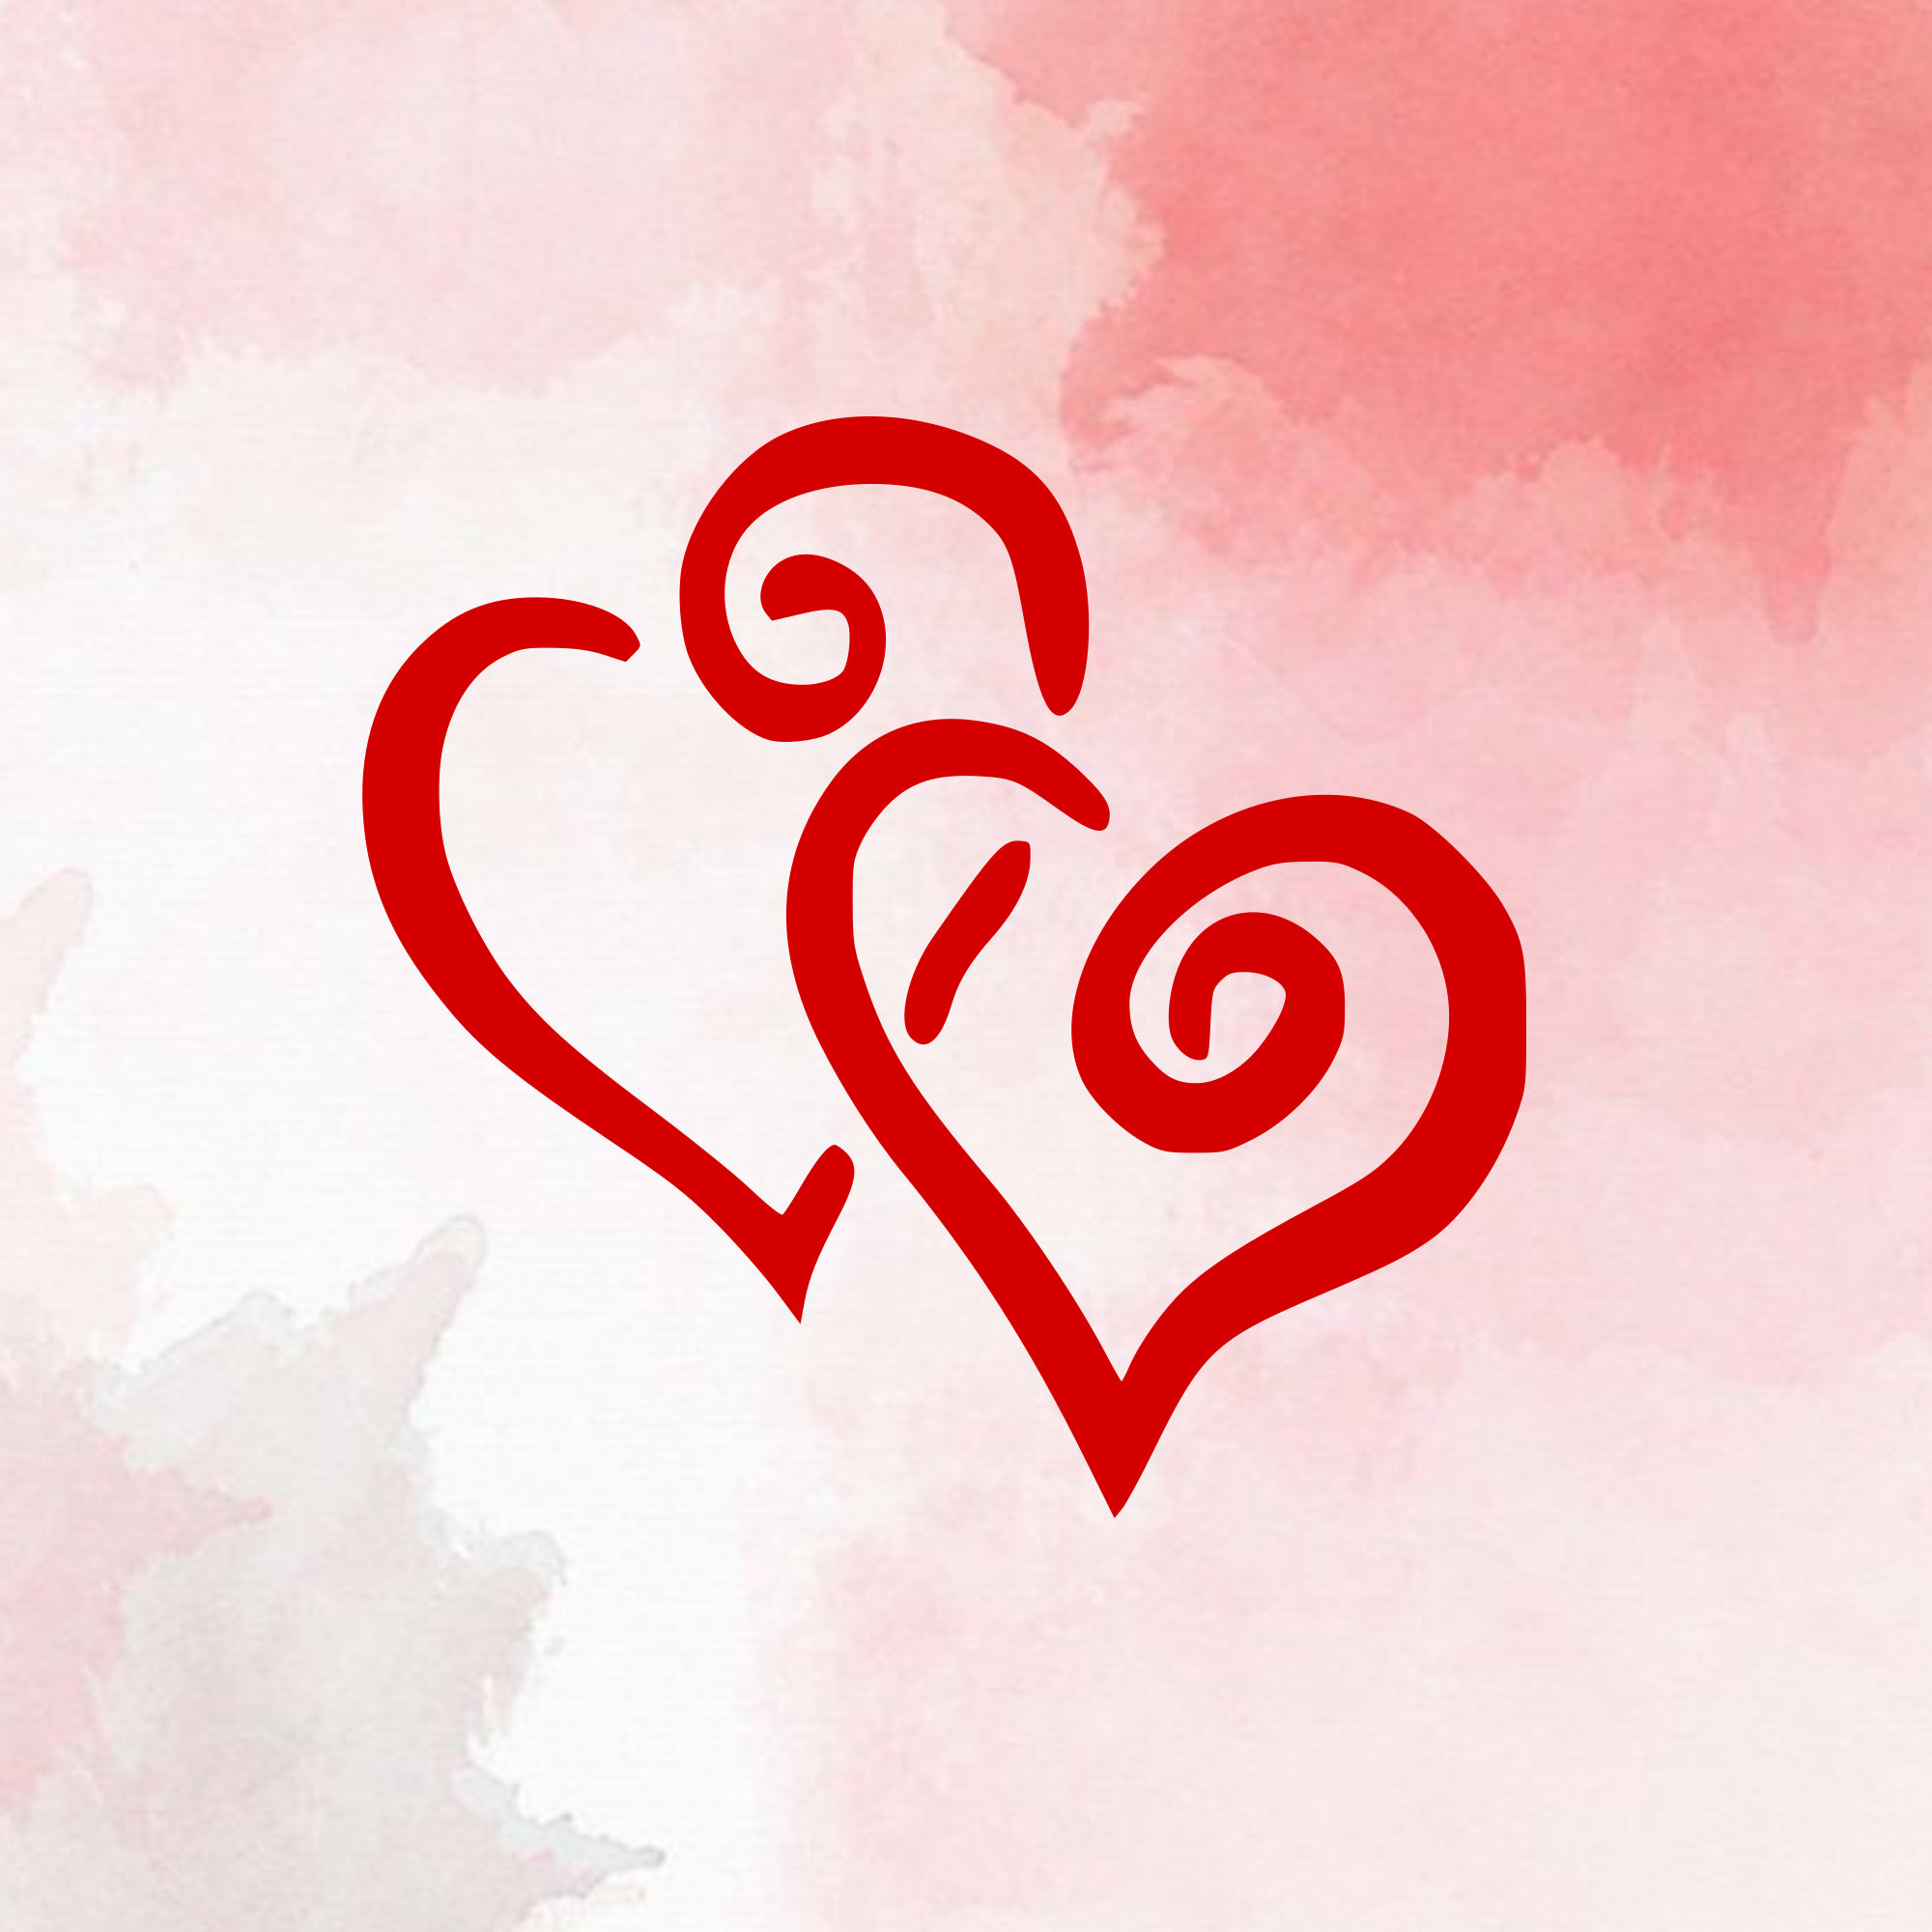 Double Heart SVG Valentine's Day SVG Love SVG Cricut | Etsy